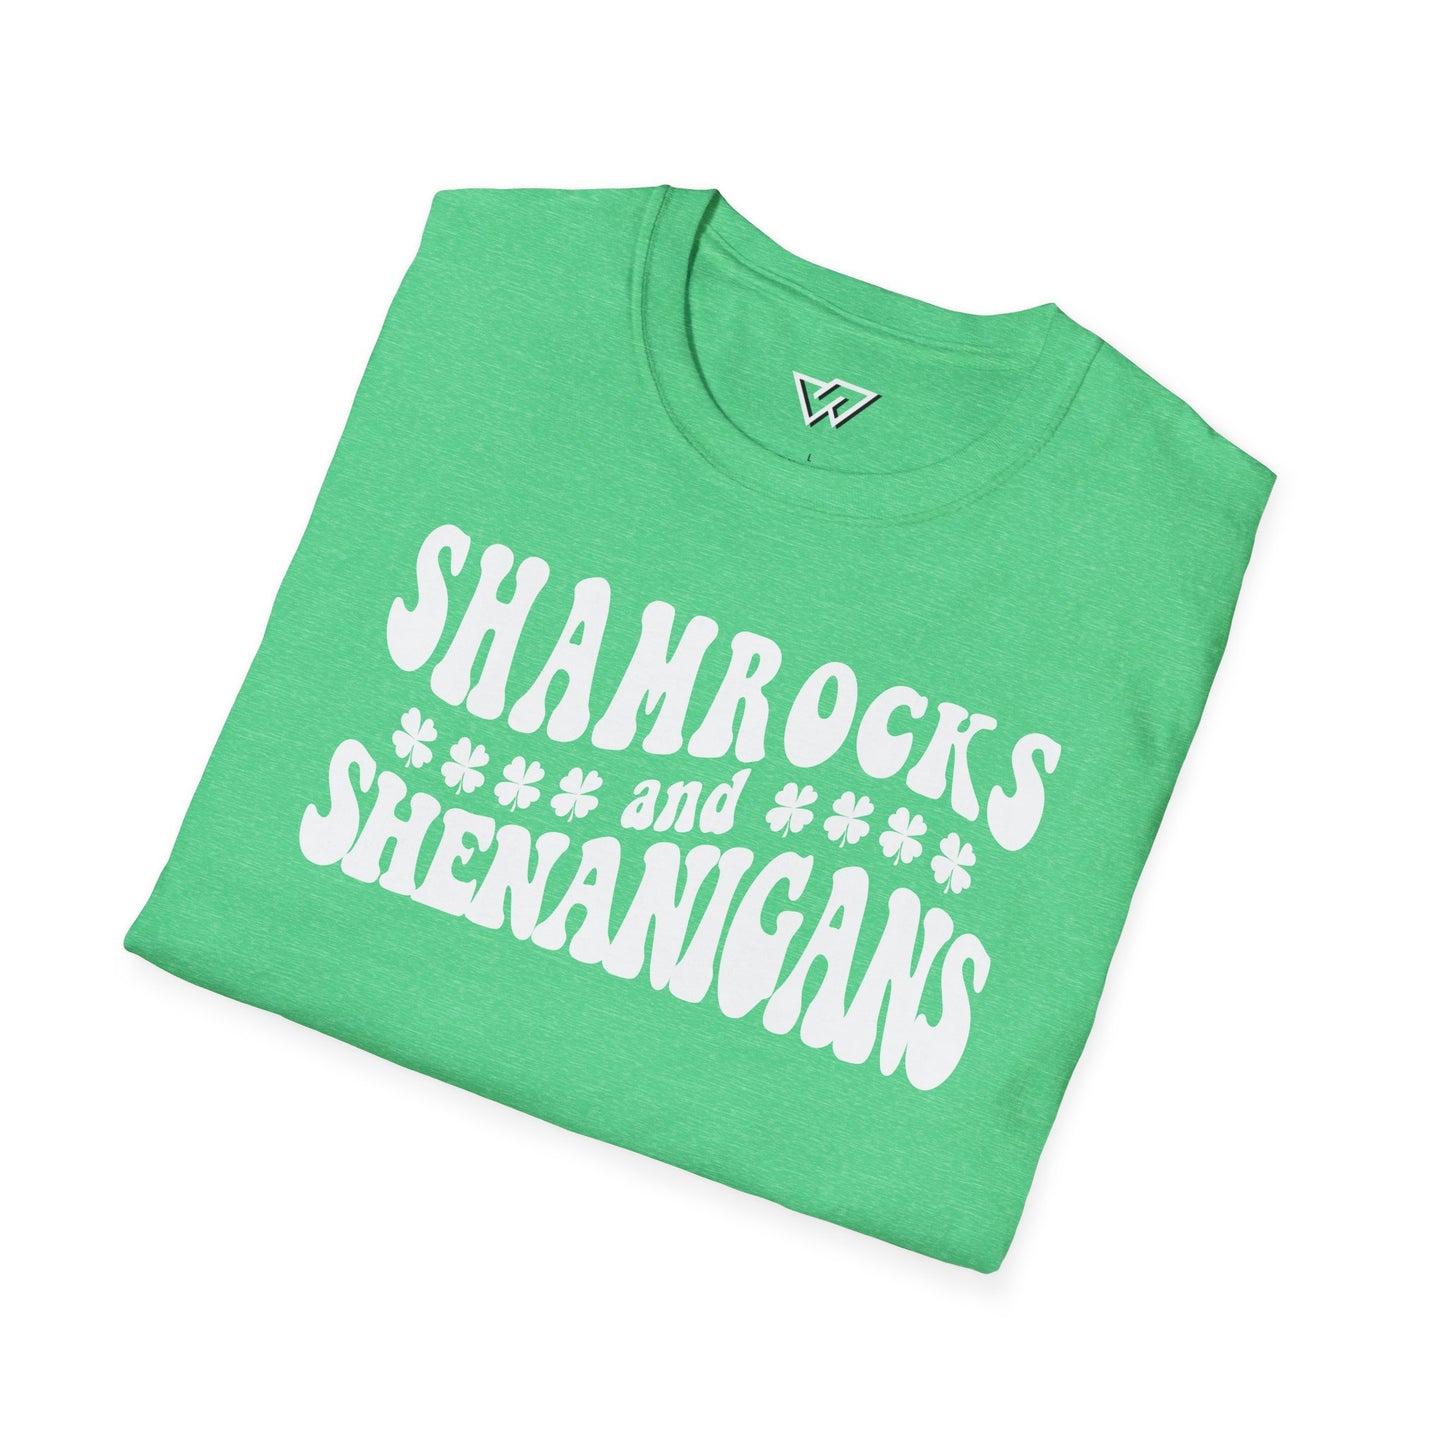 Shamrocks and Shenanigans - St. Patrick's Day Tshirt